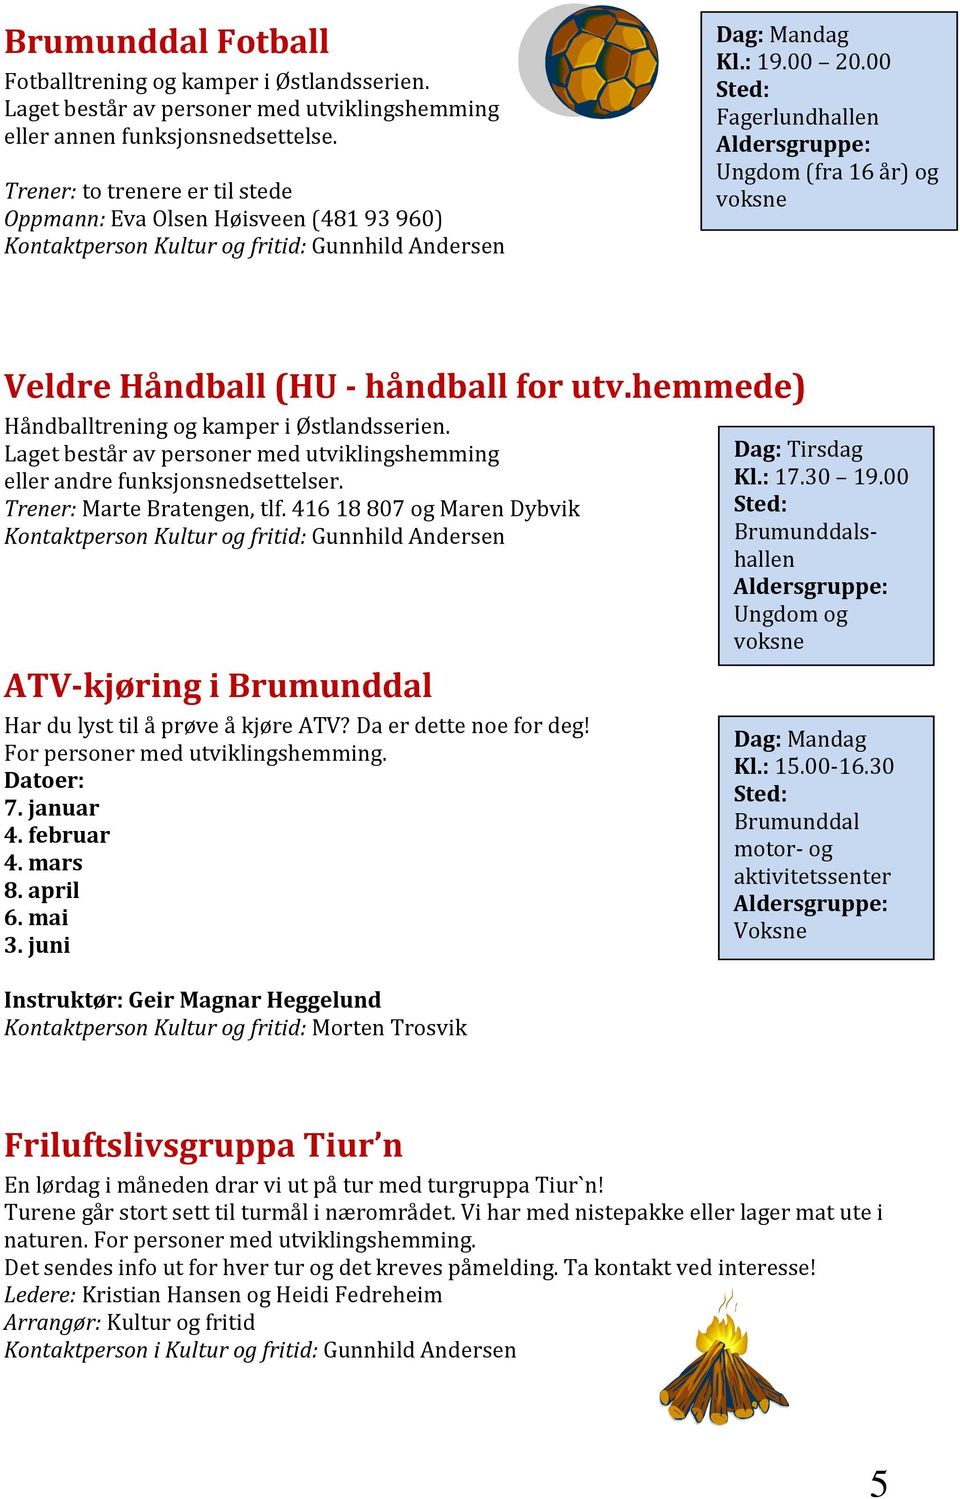 00 Sted: Fagerlundhallen Aldersgruppe: Ungdom (fra 16 år) og voksne Veldre Håndball (HU - håndball for utv.hemmede) Håndballtrening og kamper i Østlandsserien.